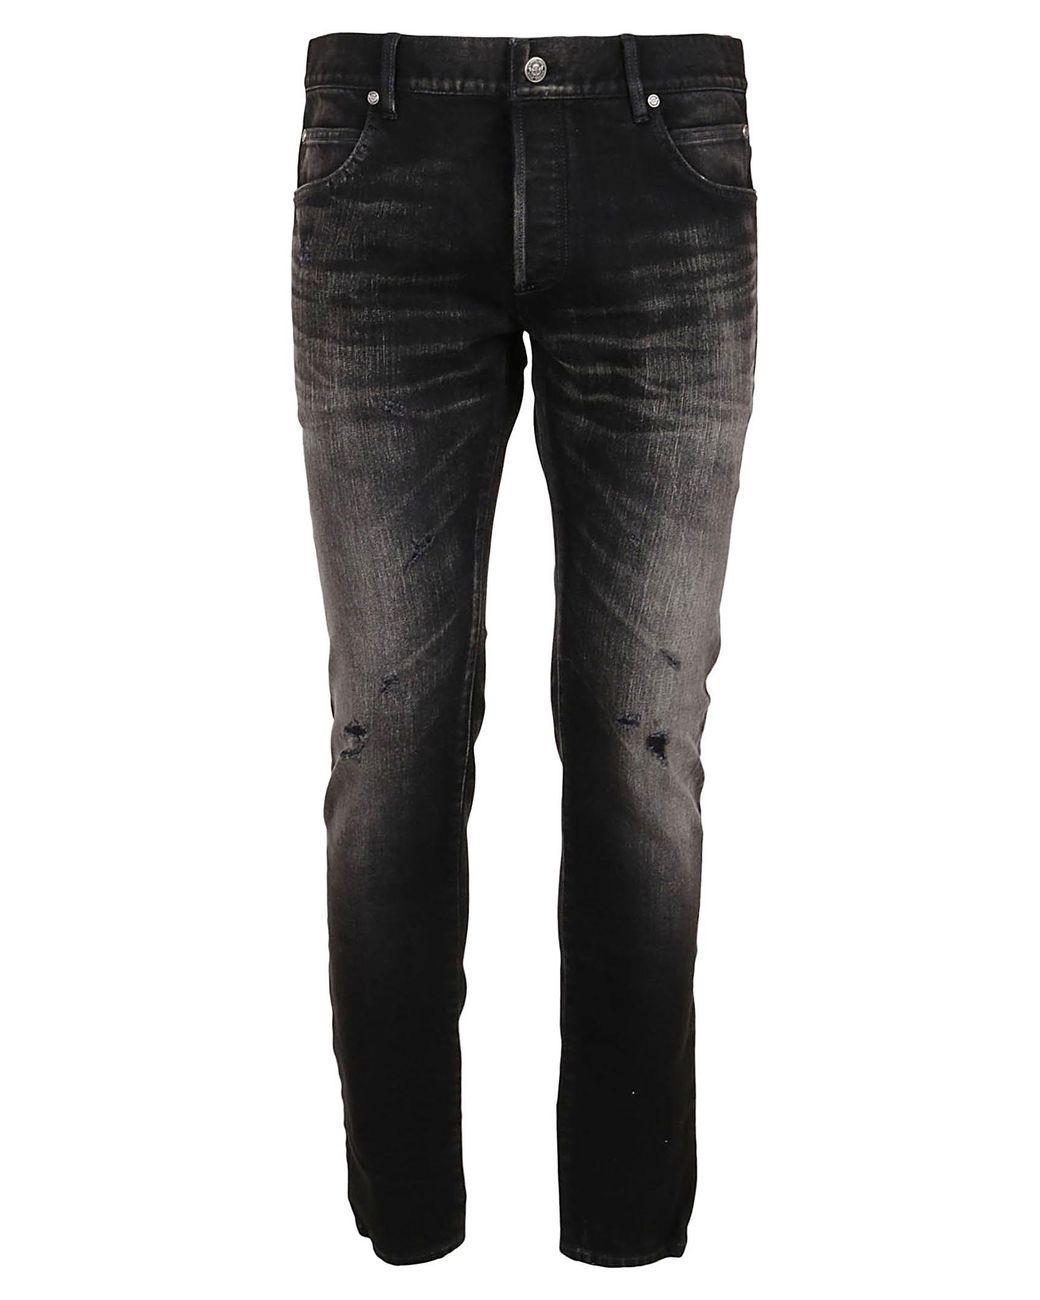 Balmain Denim Jeans in Black for Men - Lyst